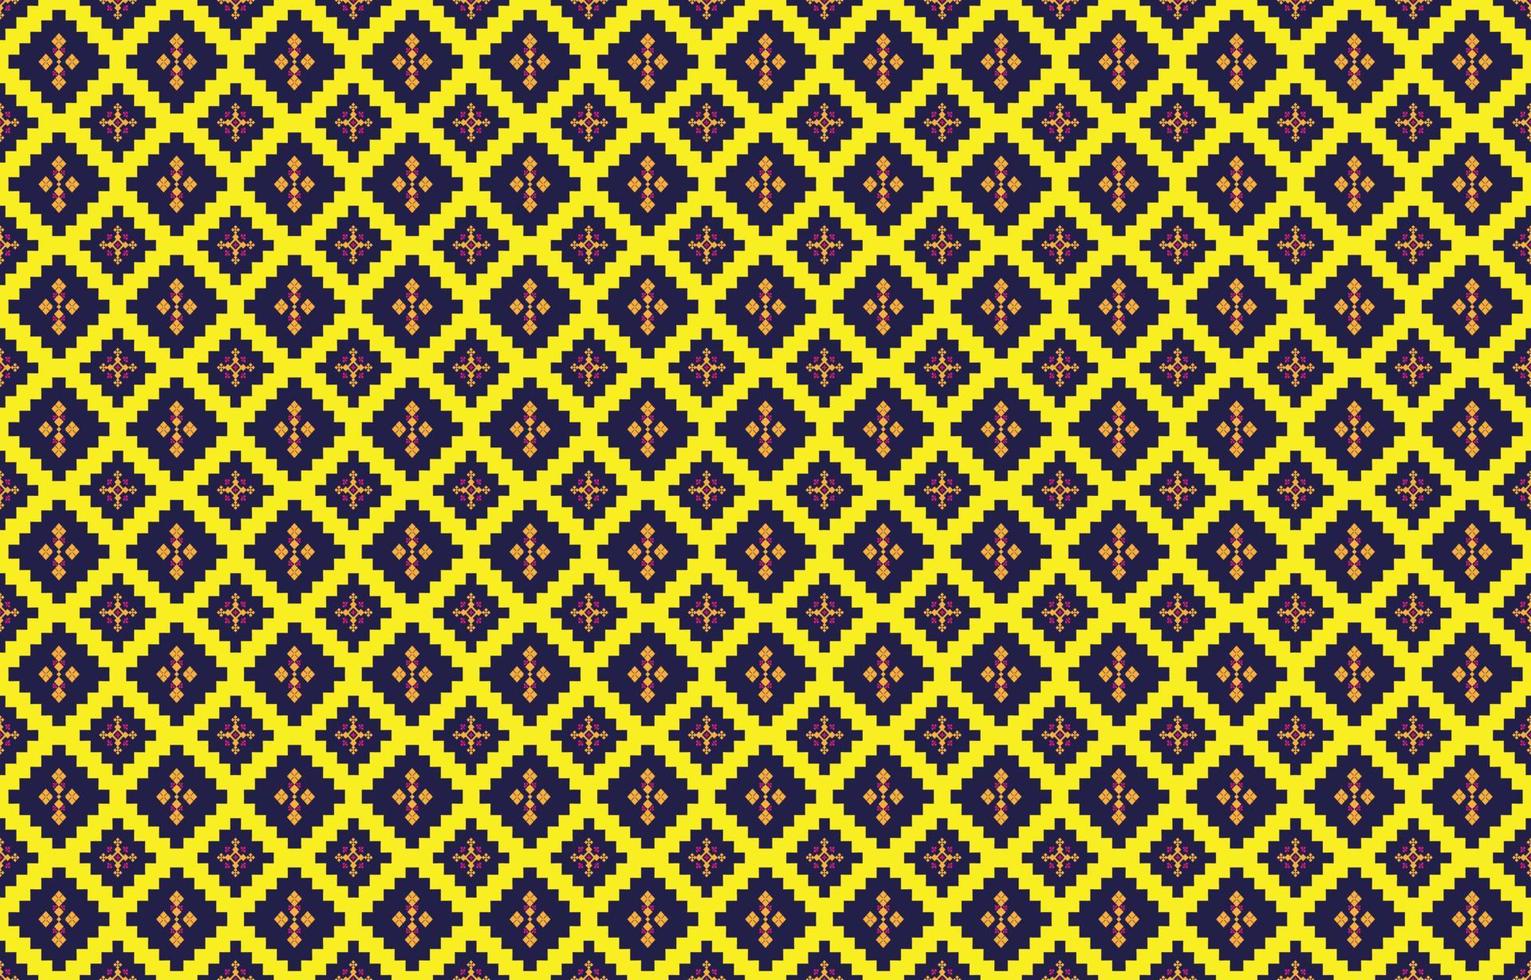 motifs géométriques et tribaux abstraits, motifs de tissus locaux de conception d'utilisation, design inspiré des tribus indigènes. illustration vectorielle géométrique vecteur